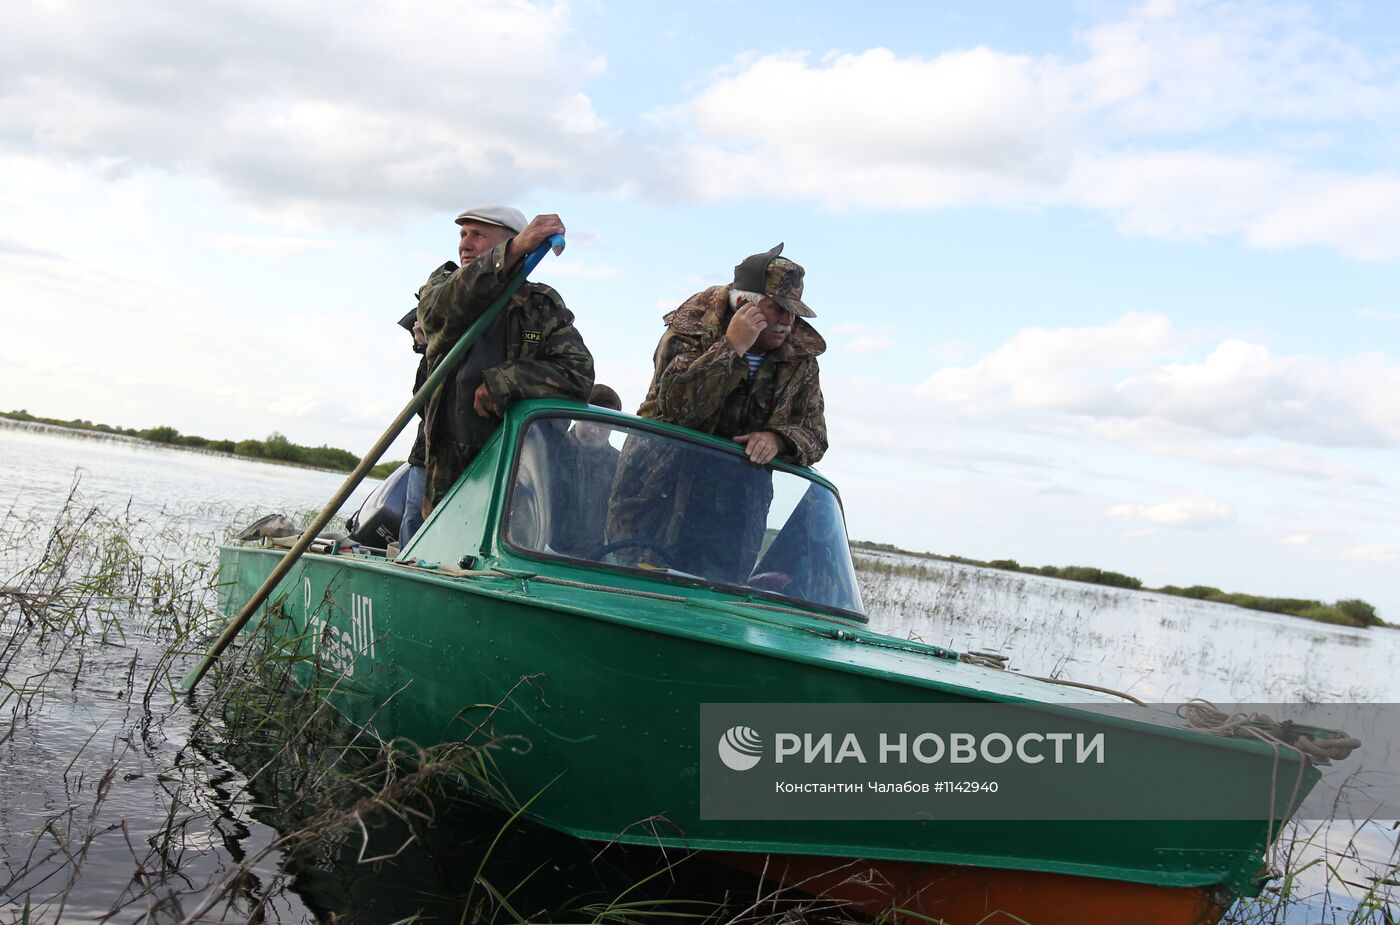 Рейд сотрудников рыбнадзора с сотрудниками МВД на озере Ильмень